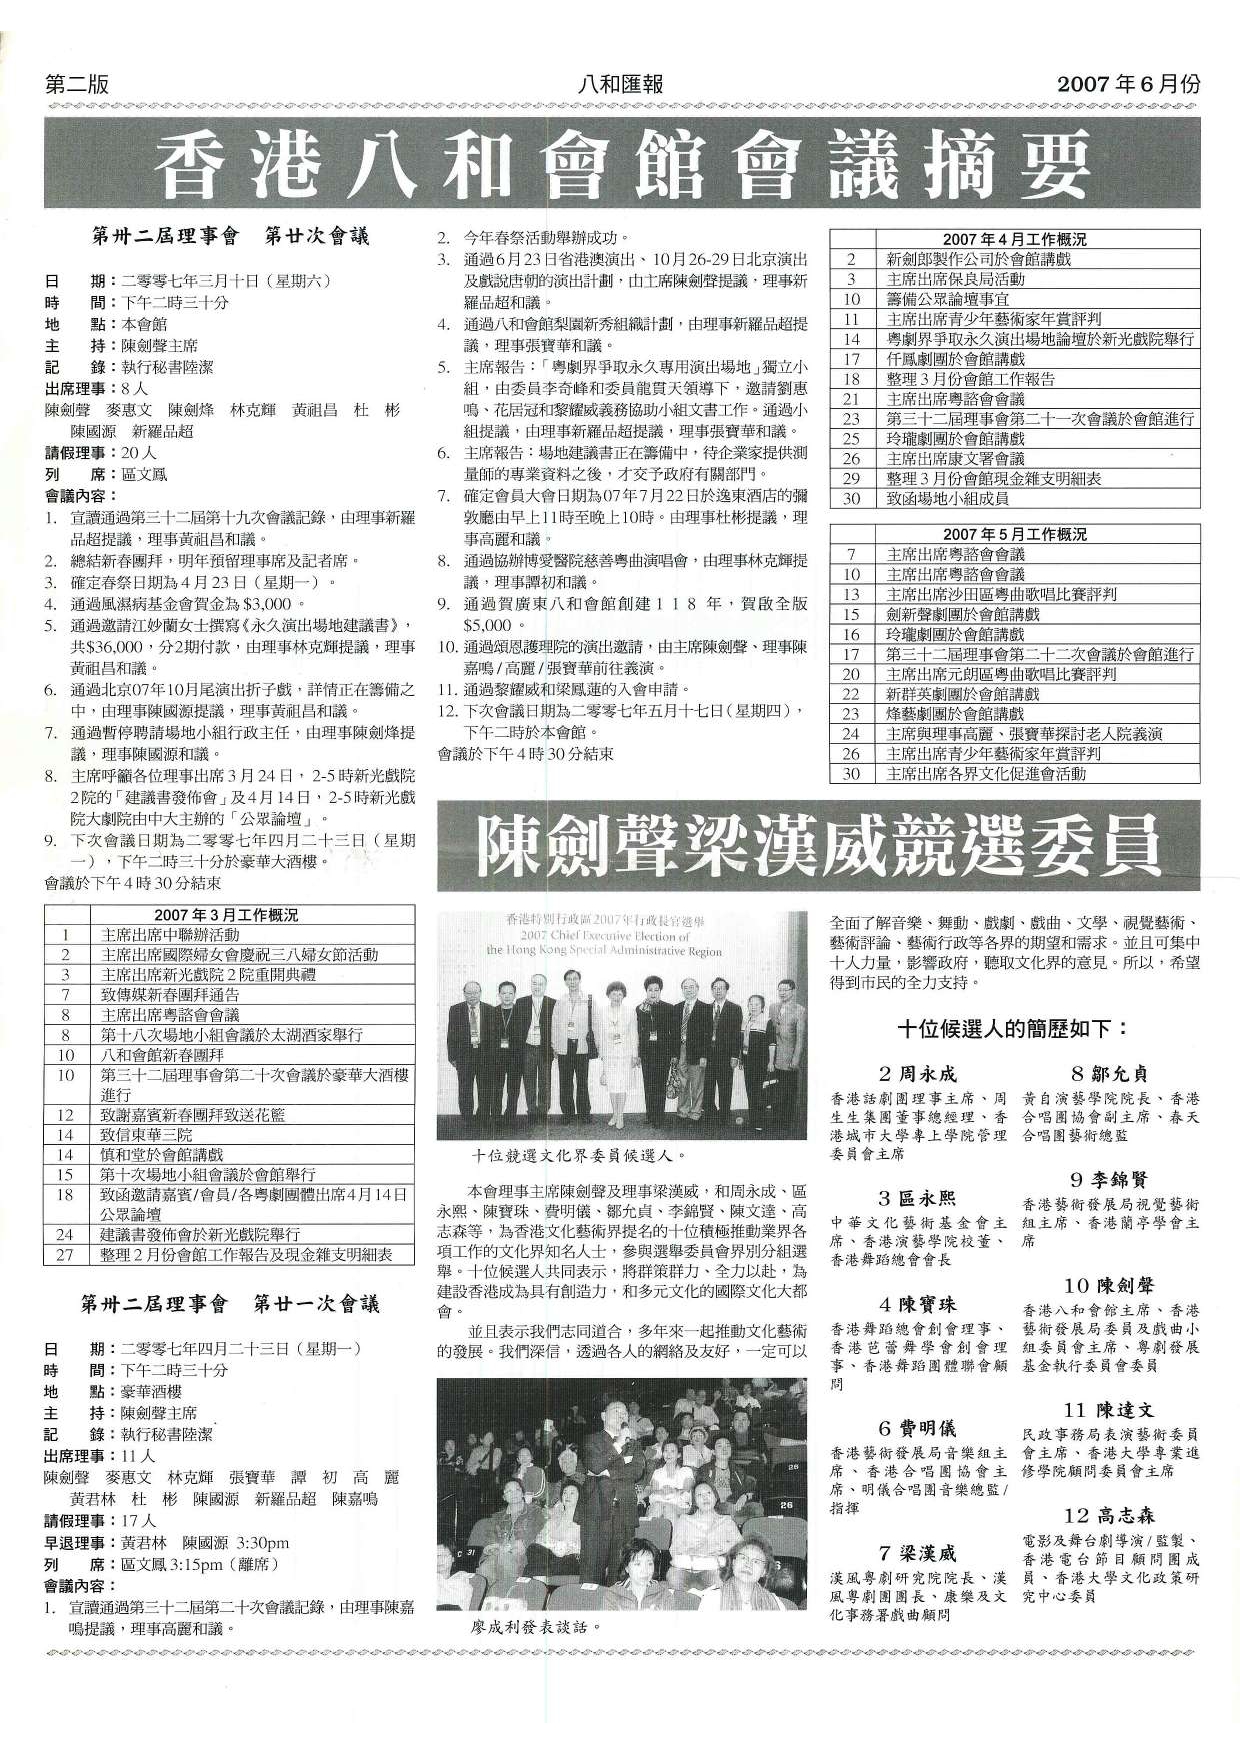 香港八和會館第三十二屆理事會第二十至二十一次會議議程及辦公室報告（2007年3月至4月） | 陳劍聲梁漢威競選文化界委員